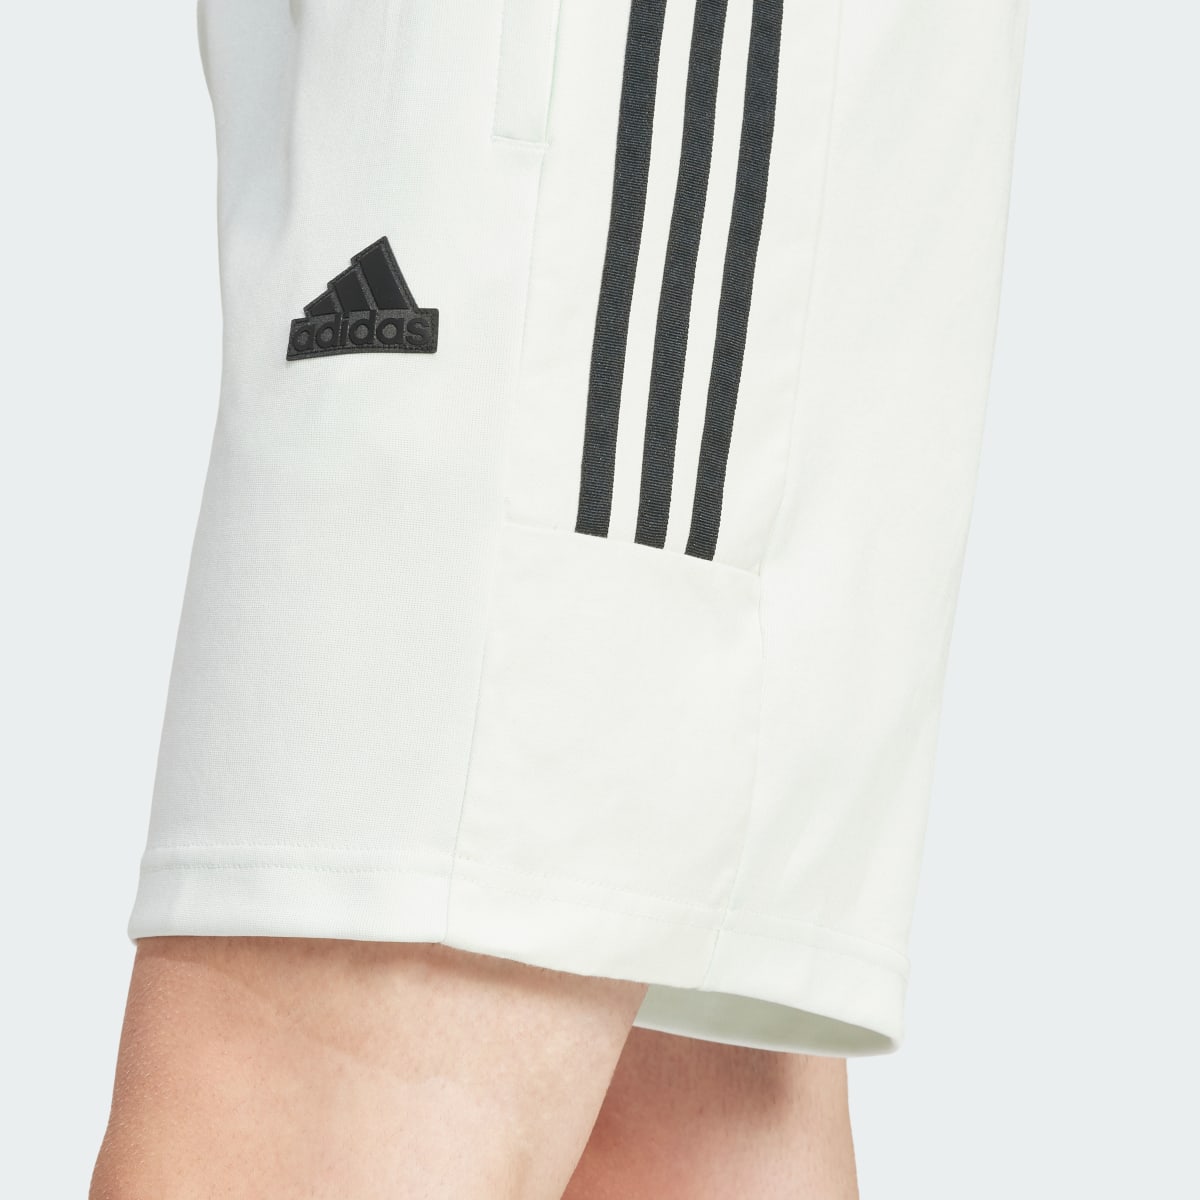 Adidas Tiro Shorts. 6